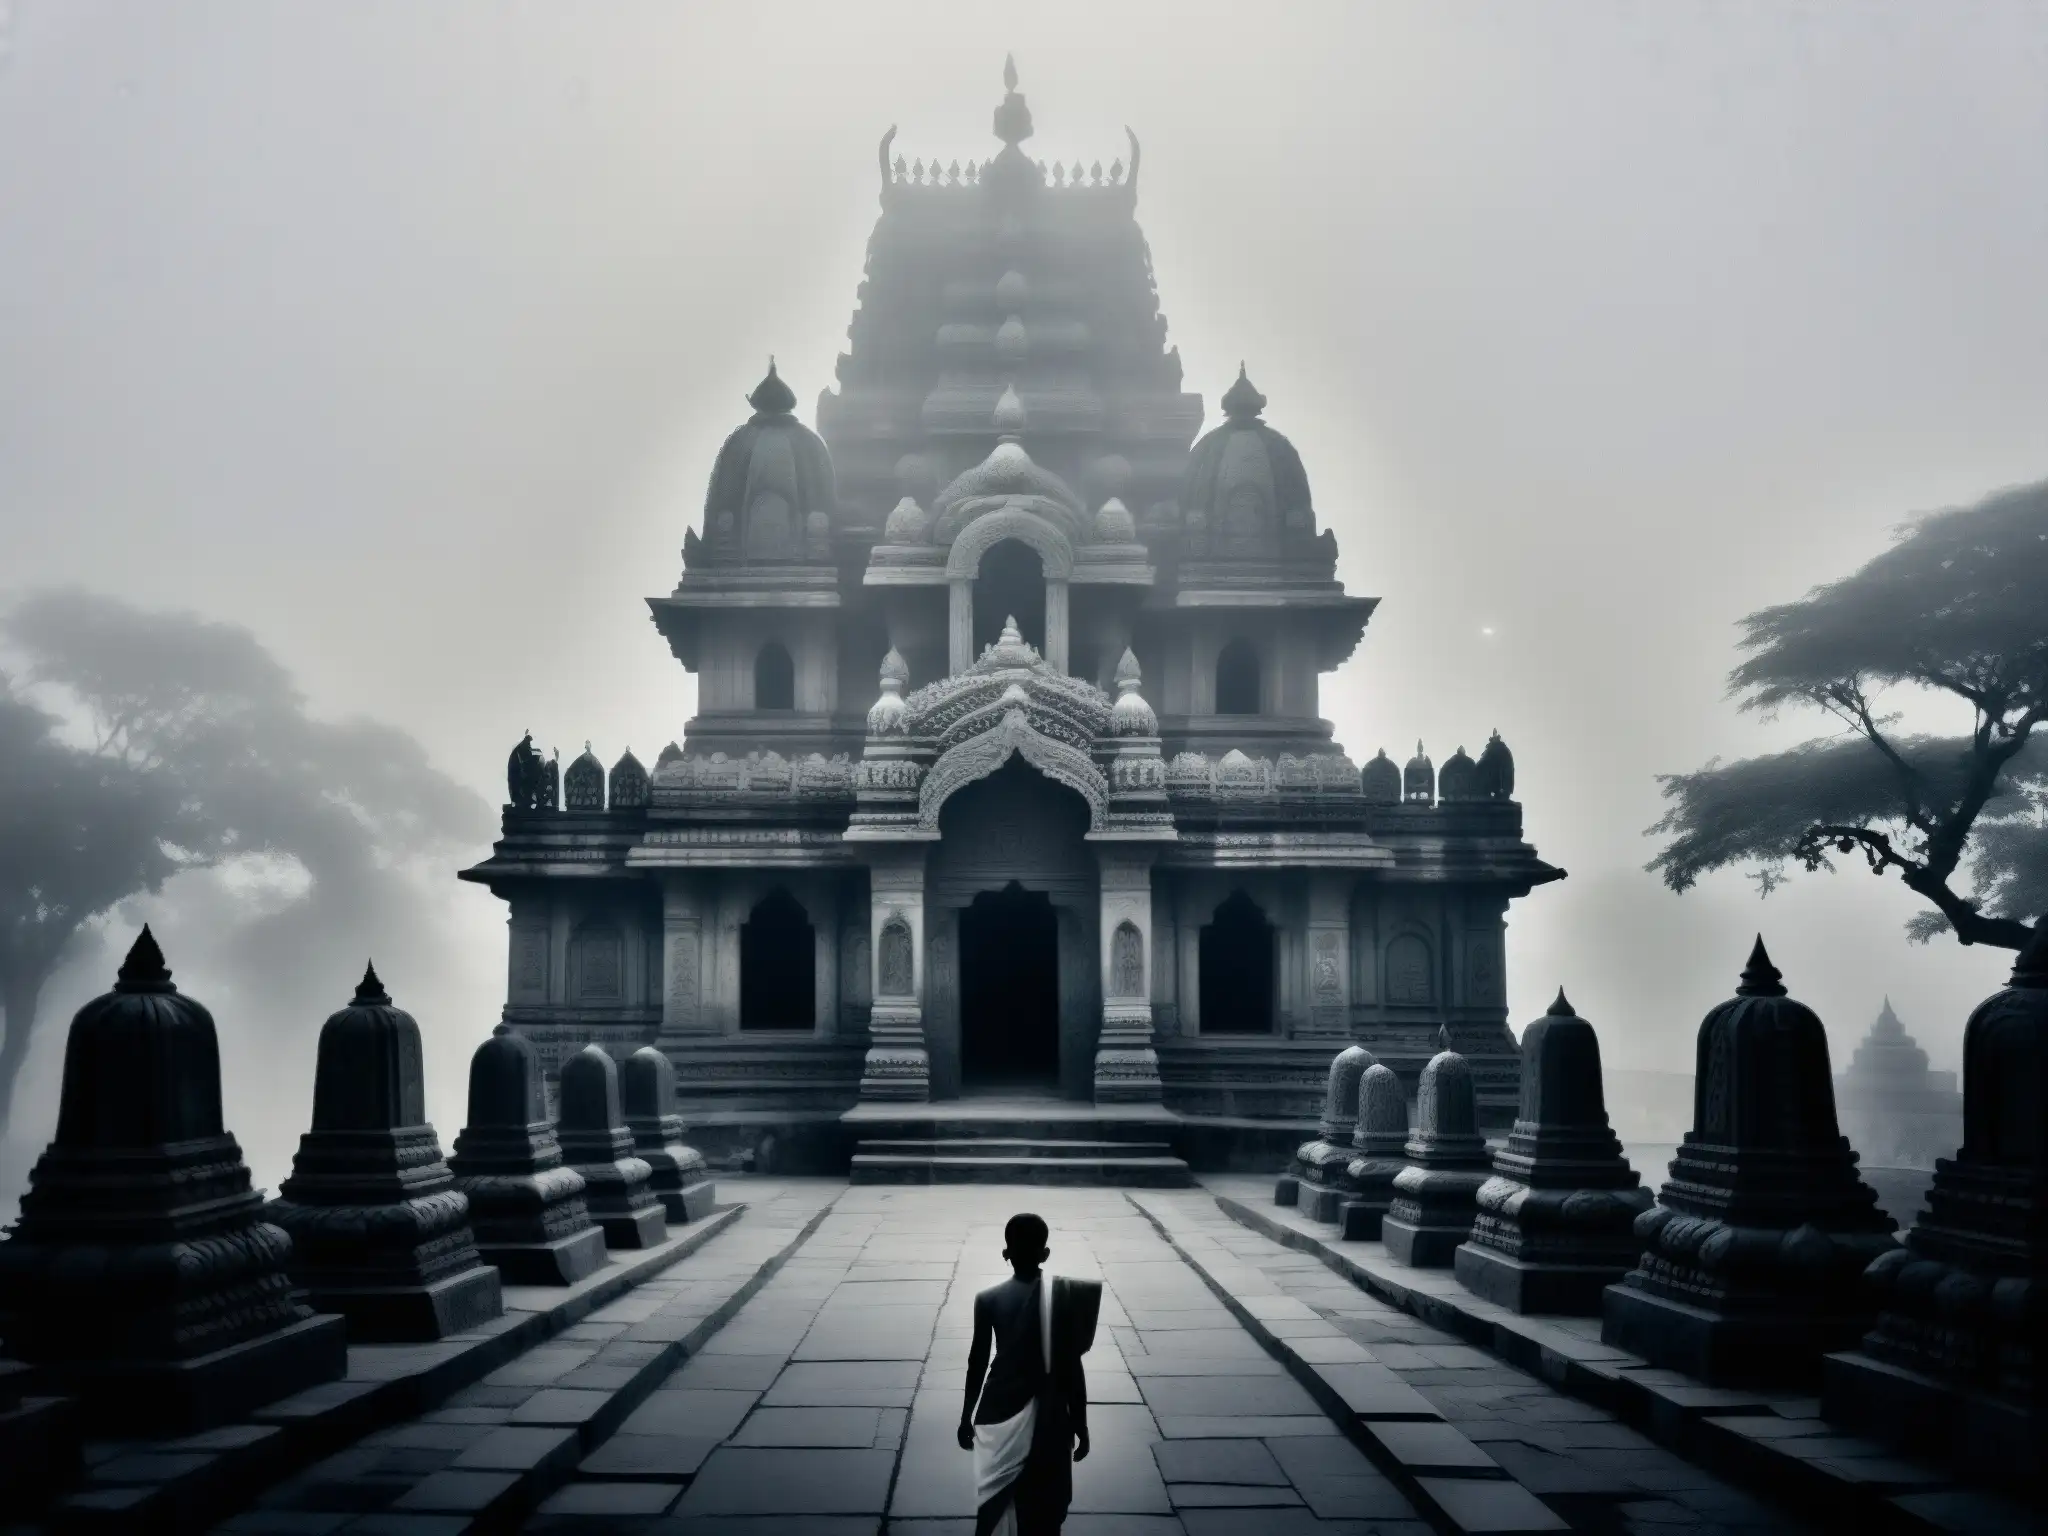 Figura solitaria contempla la misteriosa niebla que envuelve el antiguo templo Mehendipur Balaji, evocando la tragedia y el misterio del lugar